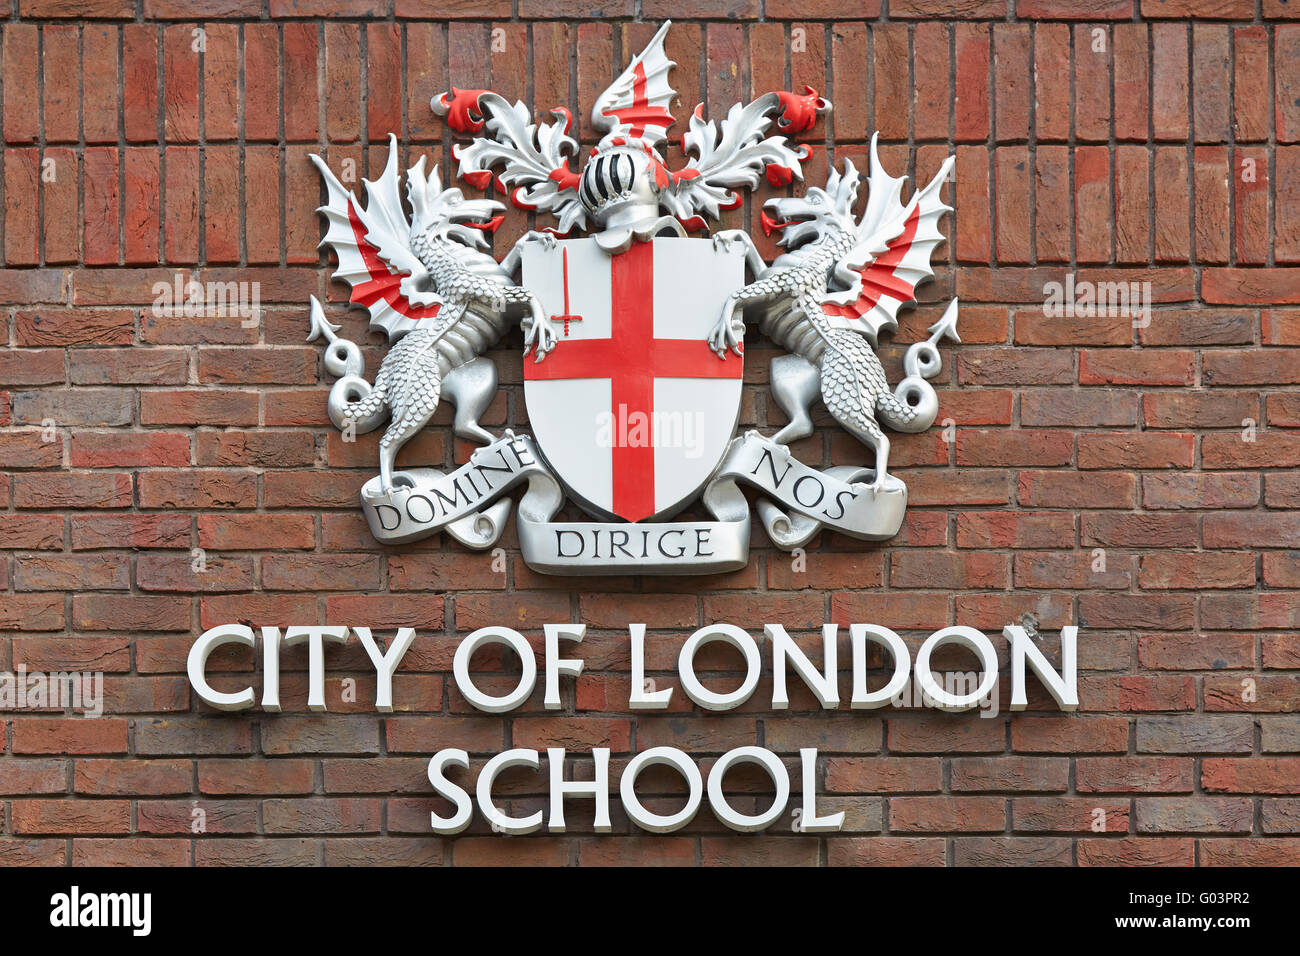 City of London School segno rosso sul muro in mattoni a Londra Foto Stock